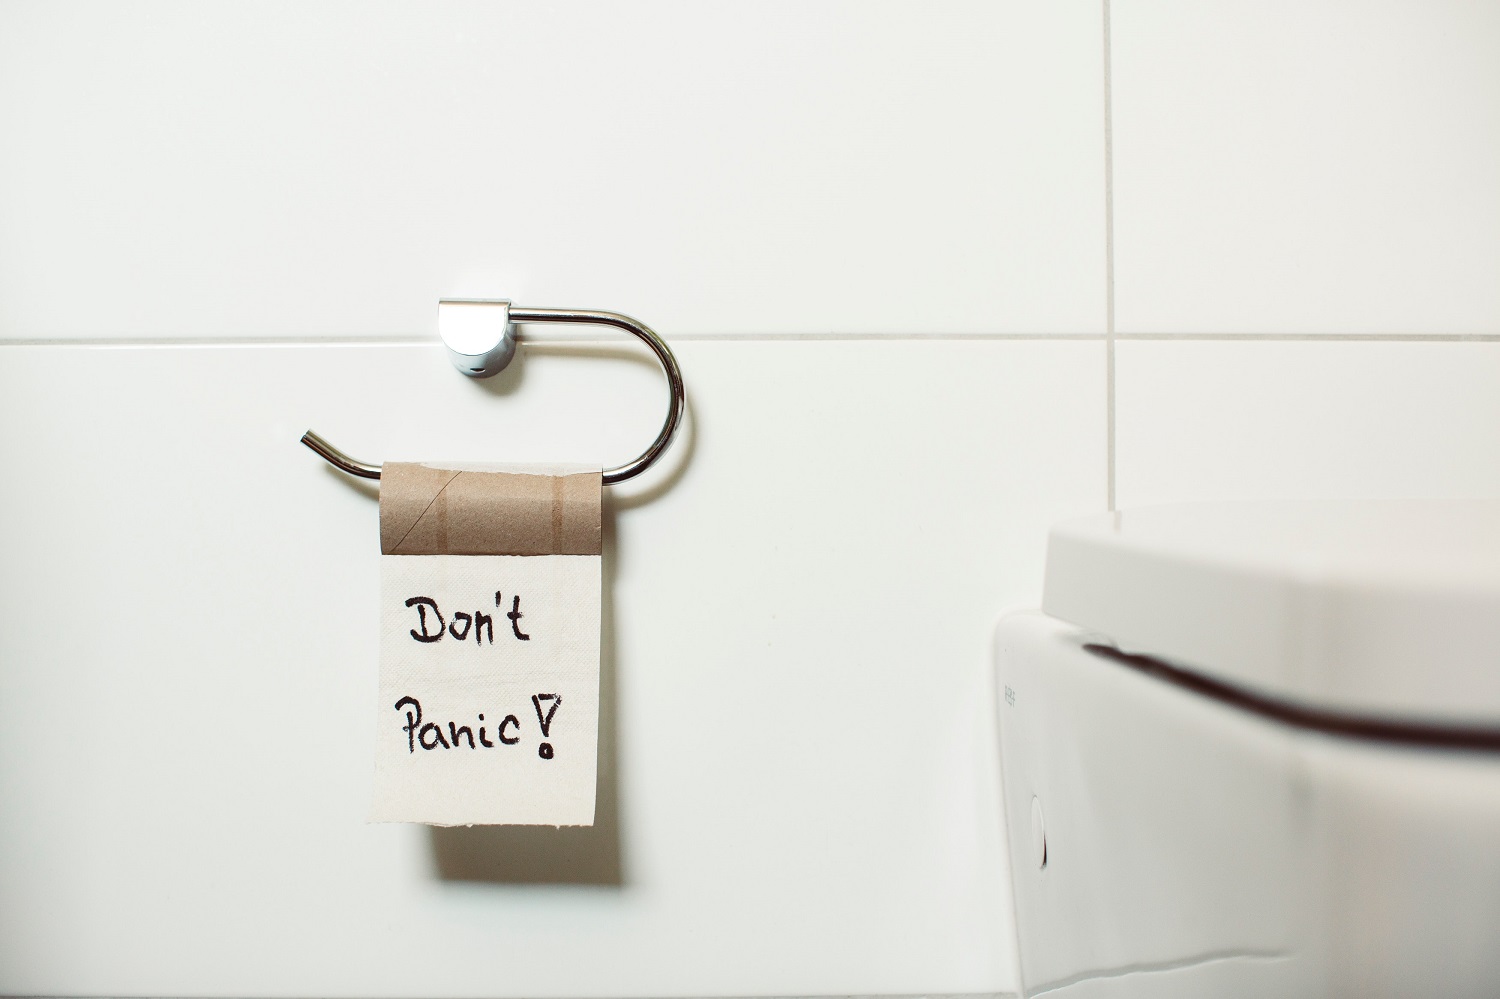 Nosį riečiantys kvapai tualete: kada gelbsti liaudiški sprendimai, o kada verta pagalvoti apie naują santechniką?